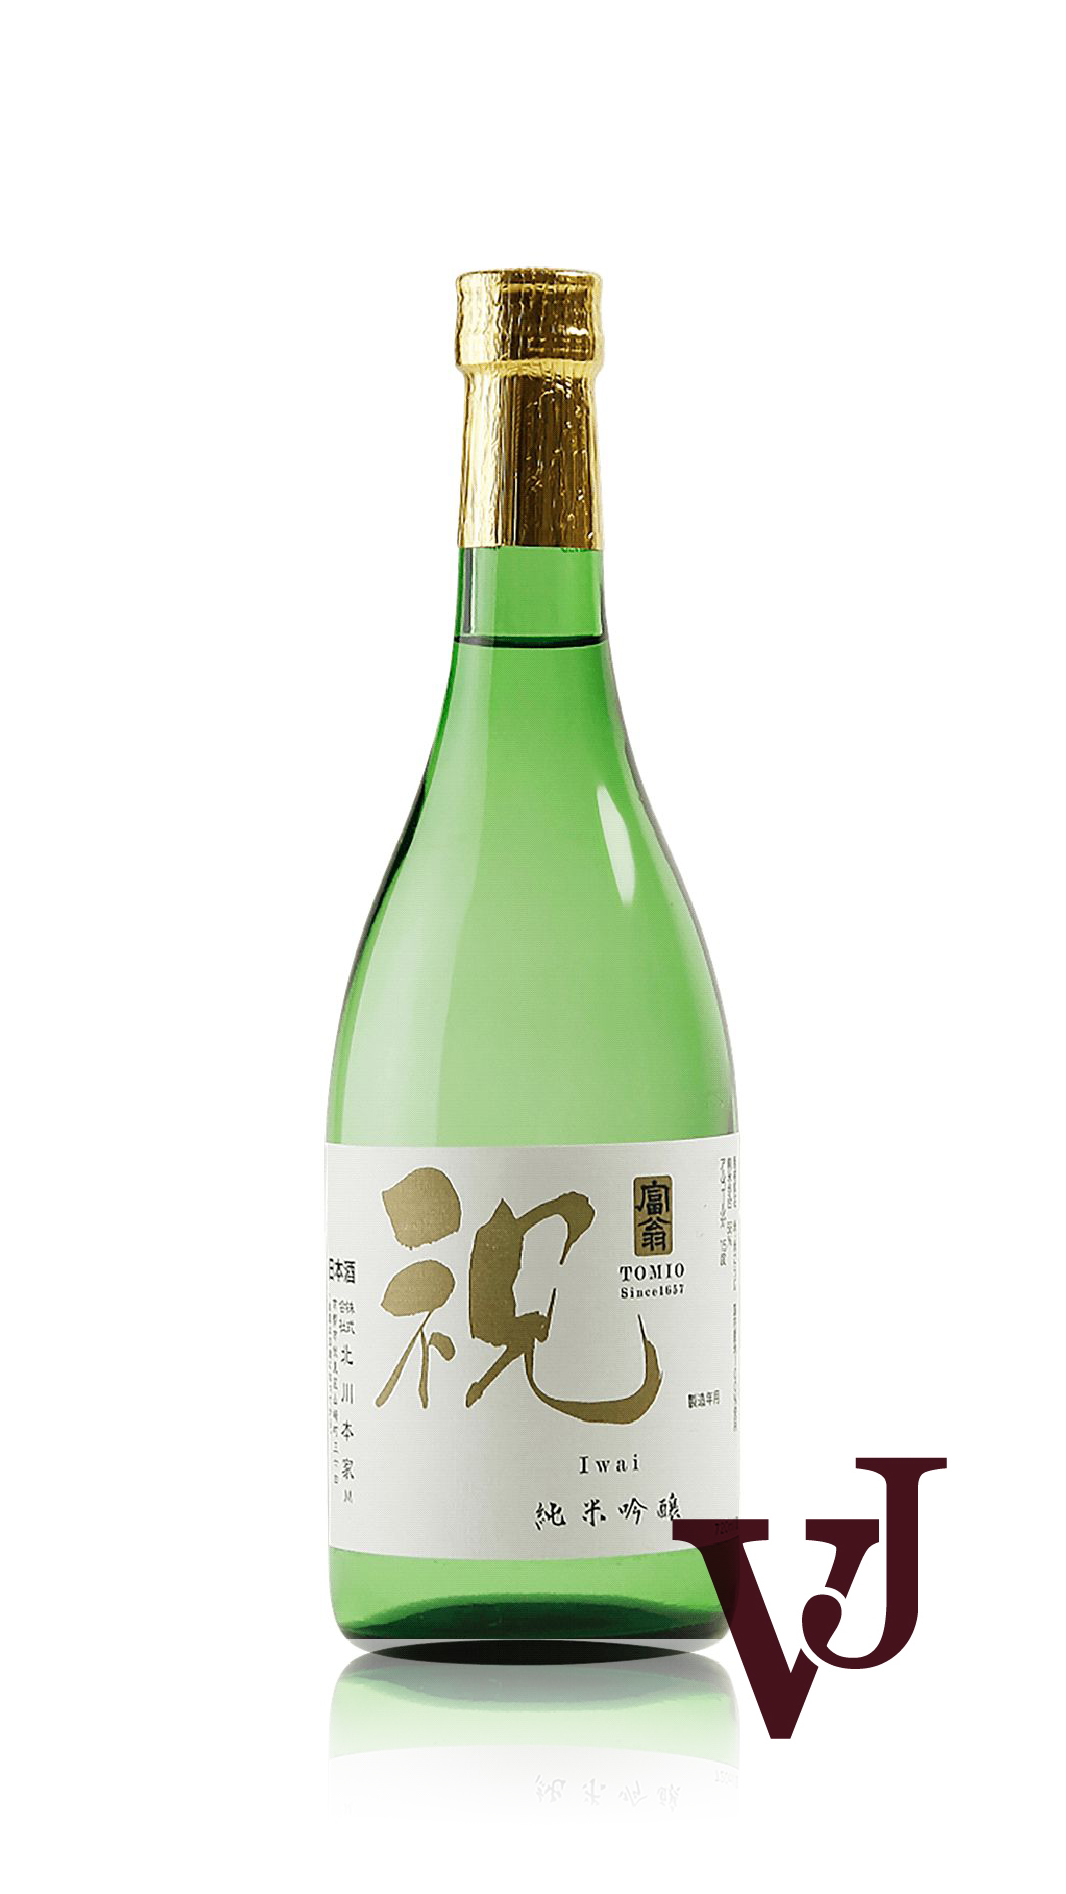 Övrigt vin - Tomio Iwai Junmai Ginjo artikel nummer 8212001 från producenten Kitagawa Honke Co. Ltd. från området Japan - Vinjournalen.se